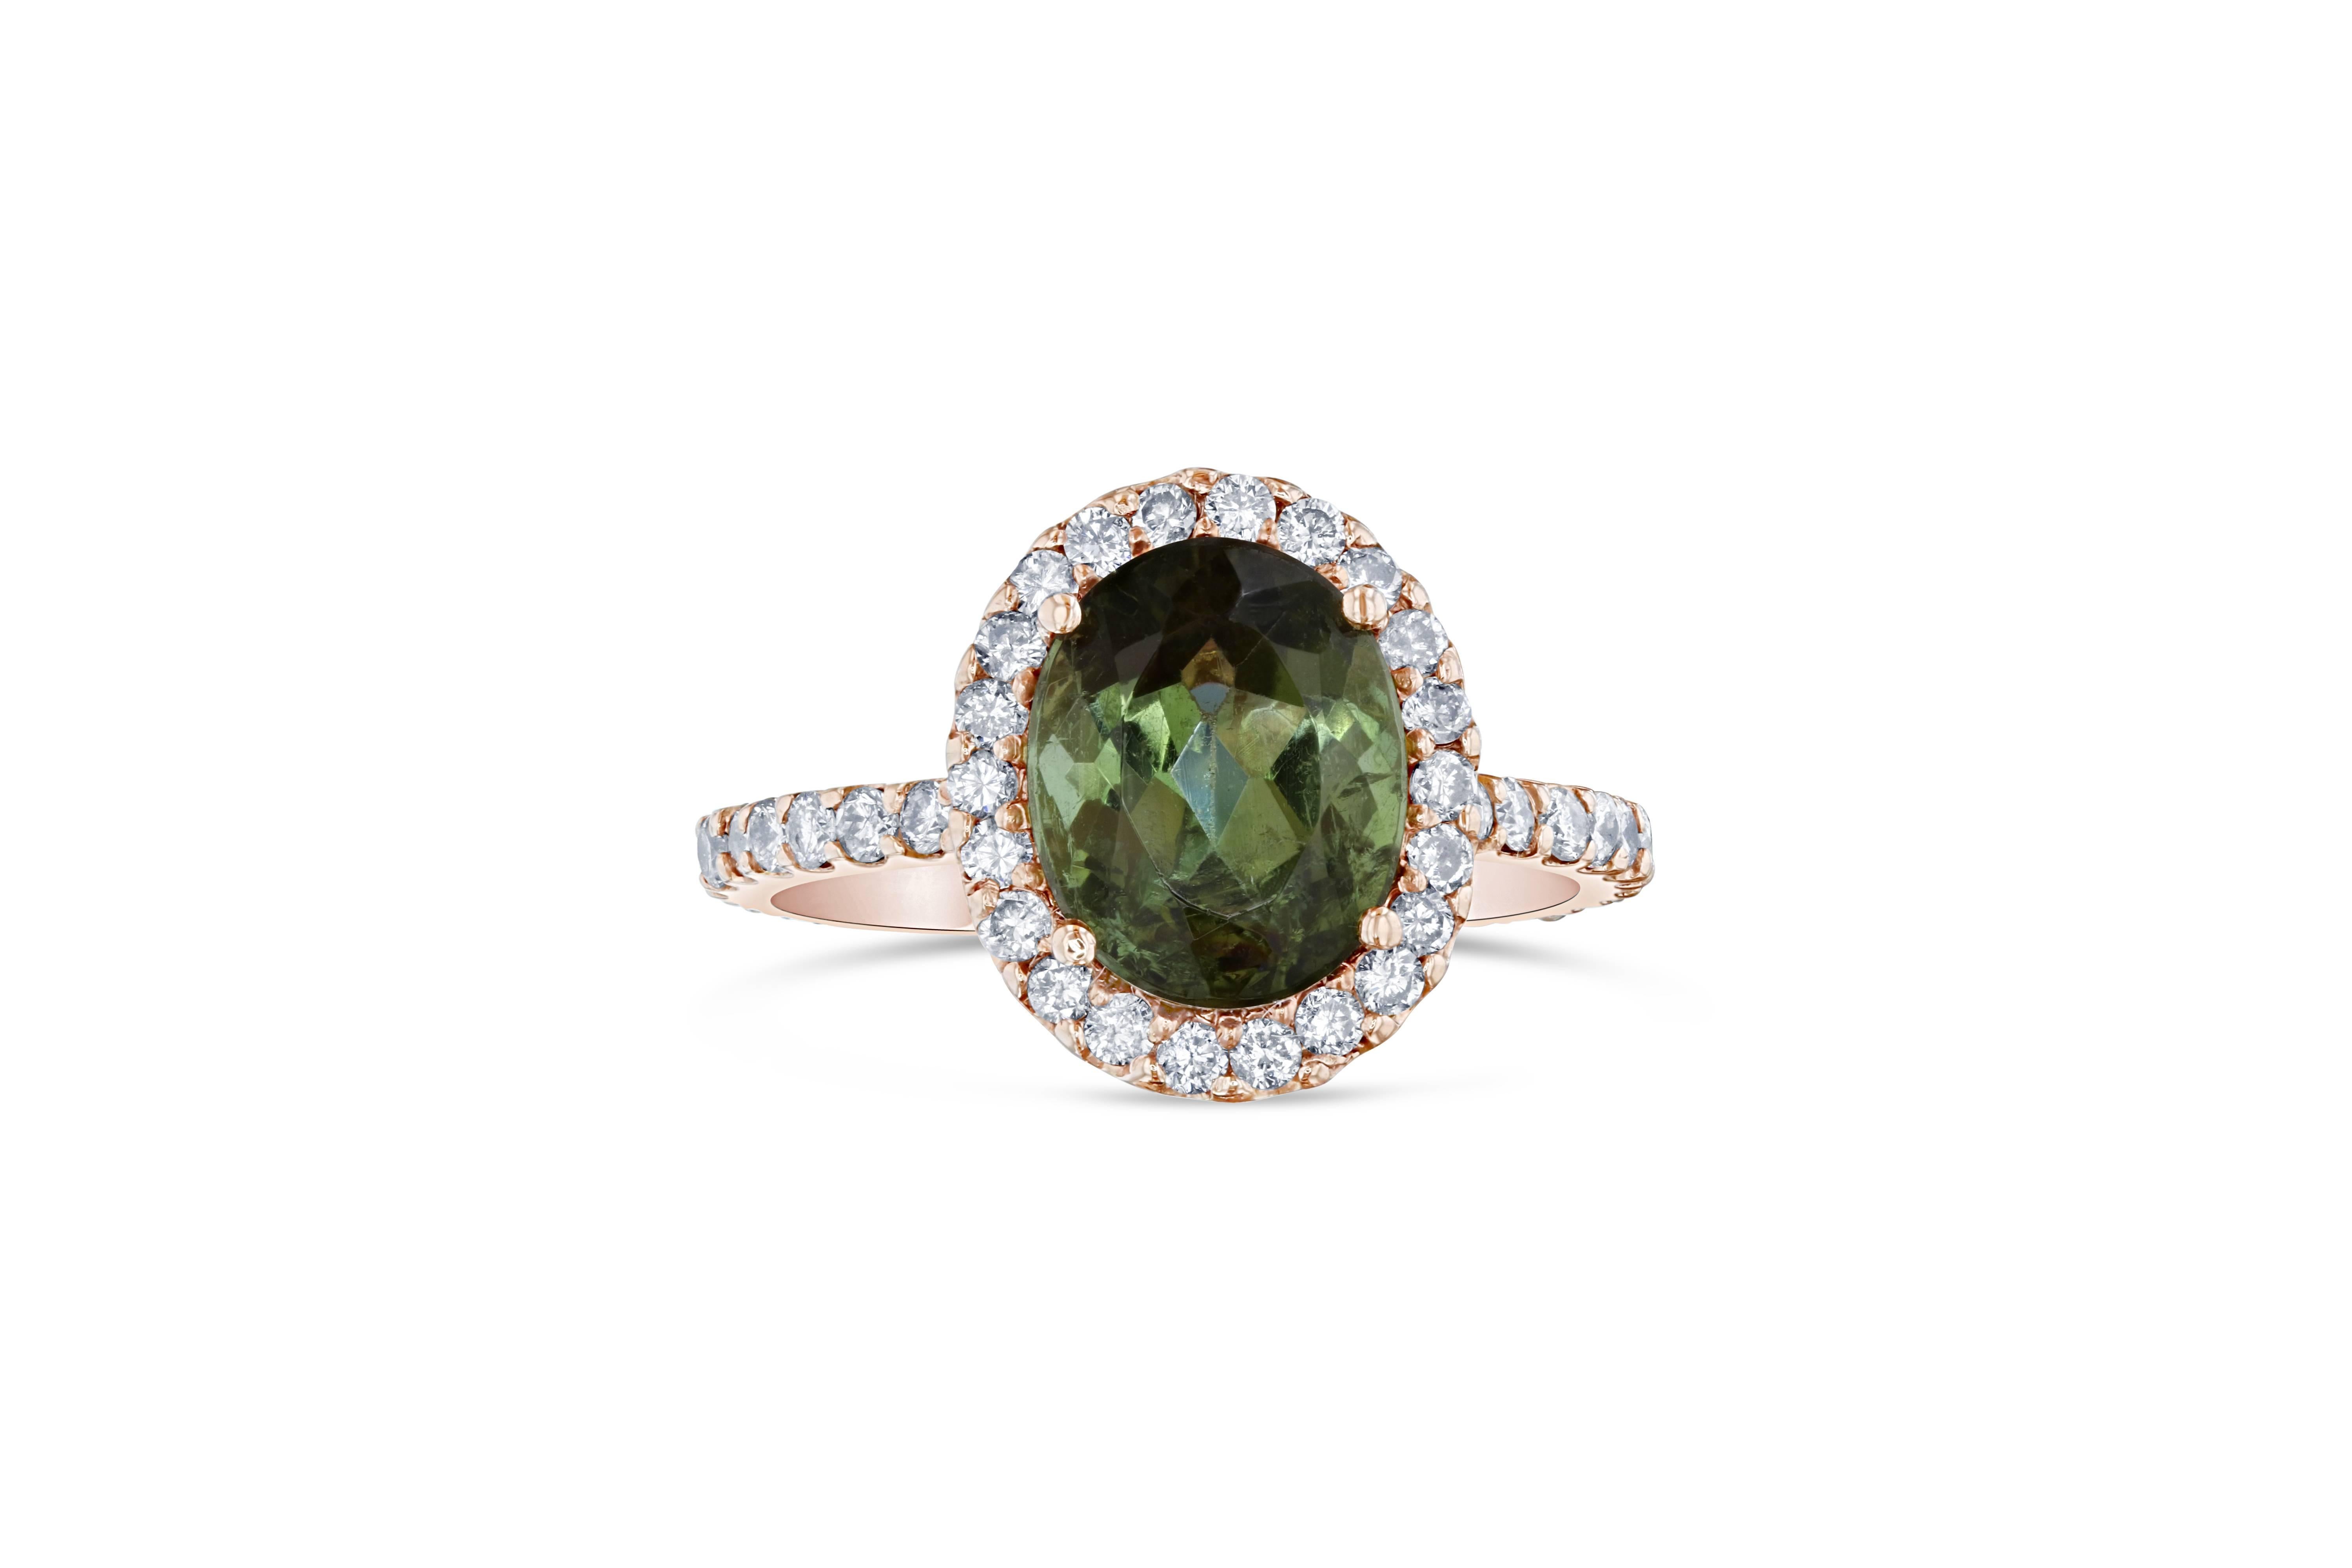 Dieser wunderschöne Ring hat einen wunderschönen grünen Turmalin im Ovalschliff mit einem Gewicht von 3,39 Karat und 46 Diamanten im Rundschliff mit einem Gewicht von 0,81 Karat. Das Gesamtkaratgewicht des Rings beträgt 4,20 Karat. Er ist in 14K